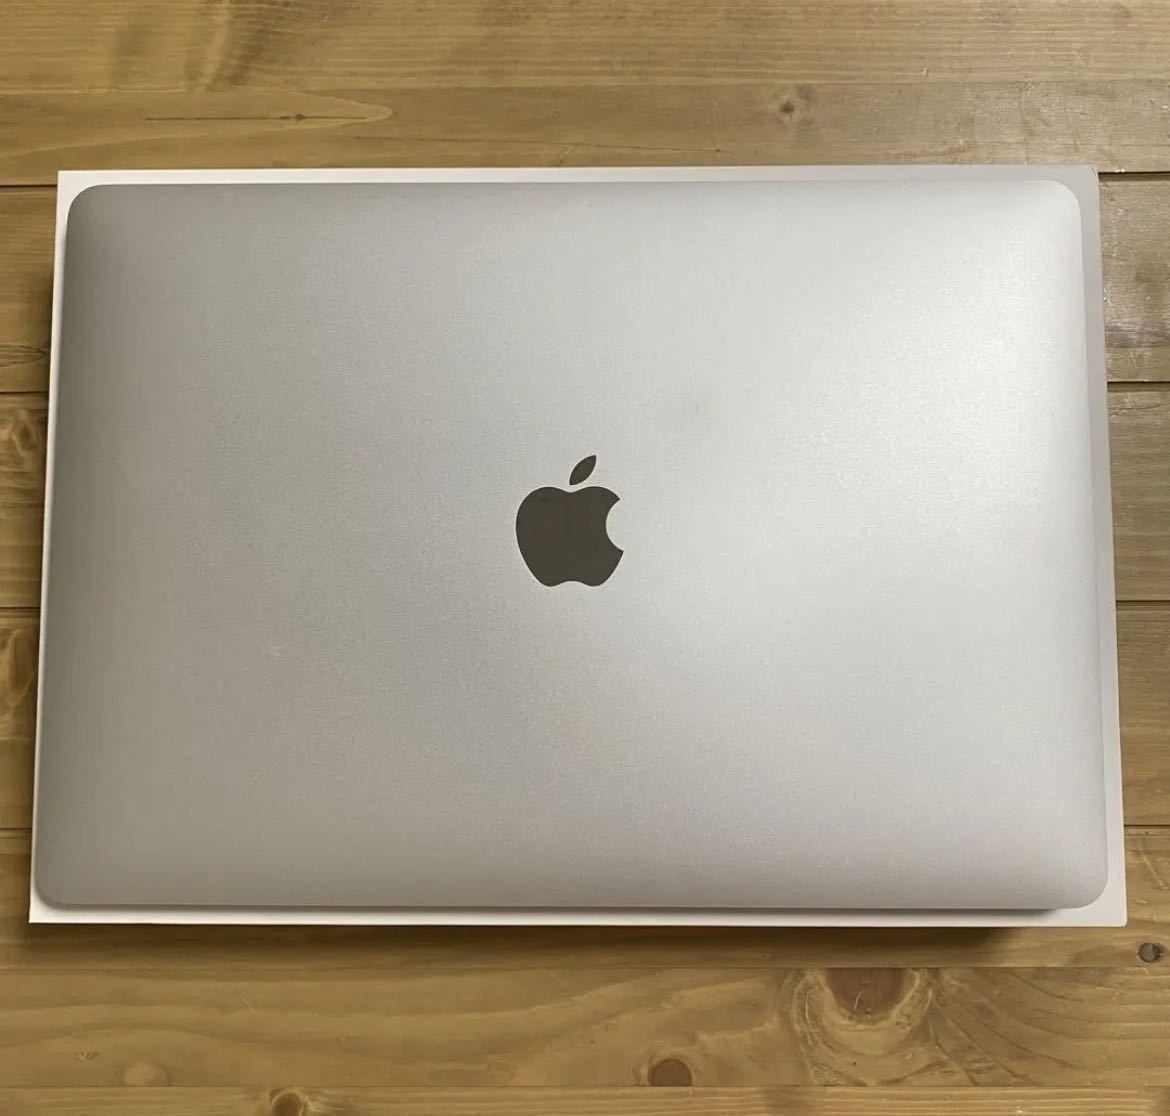 26日までの限定価格 MacBook Air 13インチ 2020モデル M1チップ搭載 